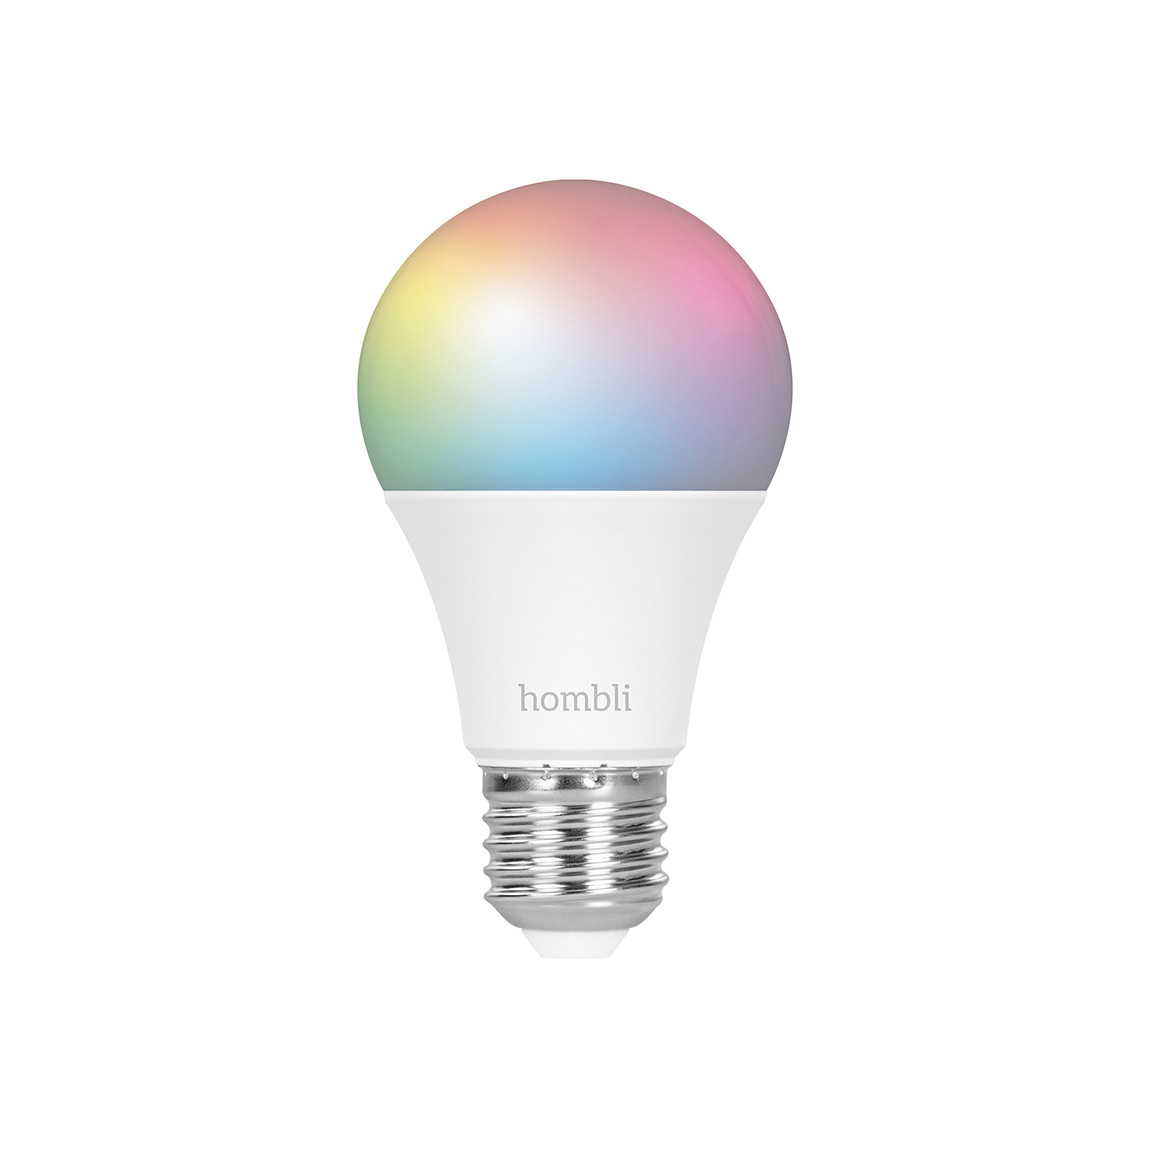 Hombli Smart Bulb E27 Color